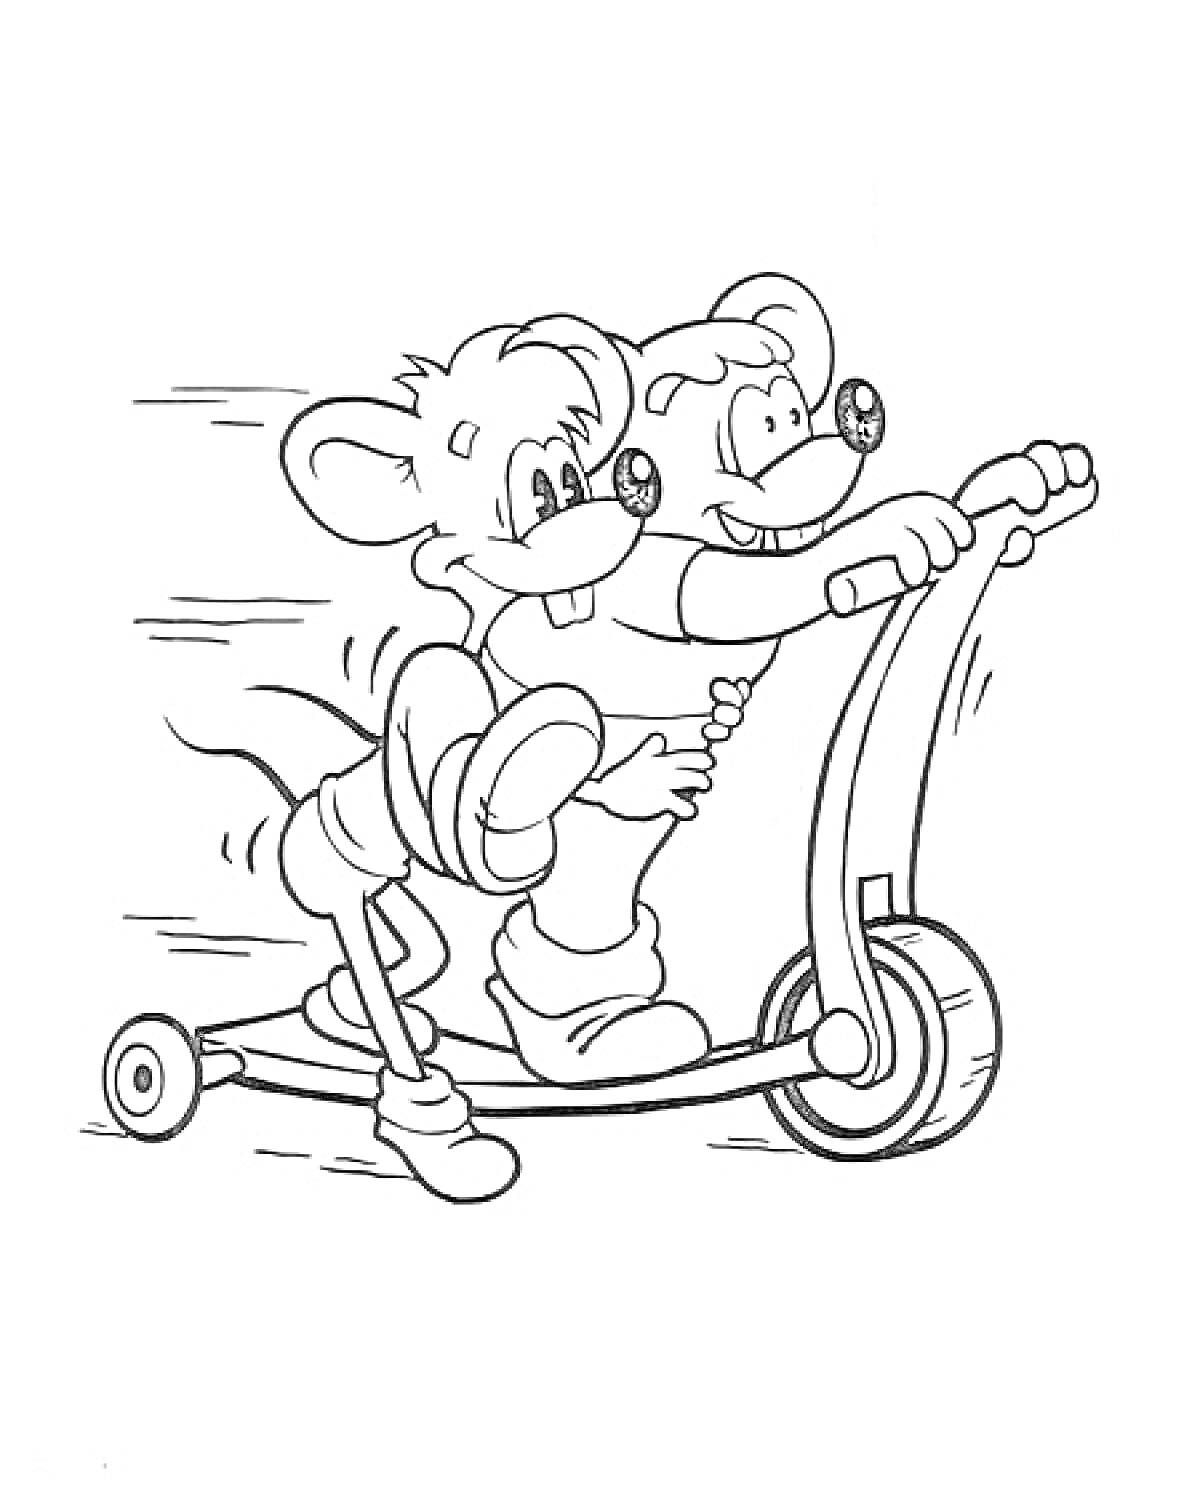 Раскраска Две мыши на самокате из мультфильма 